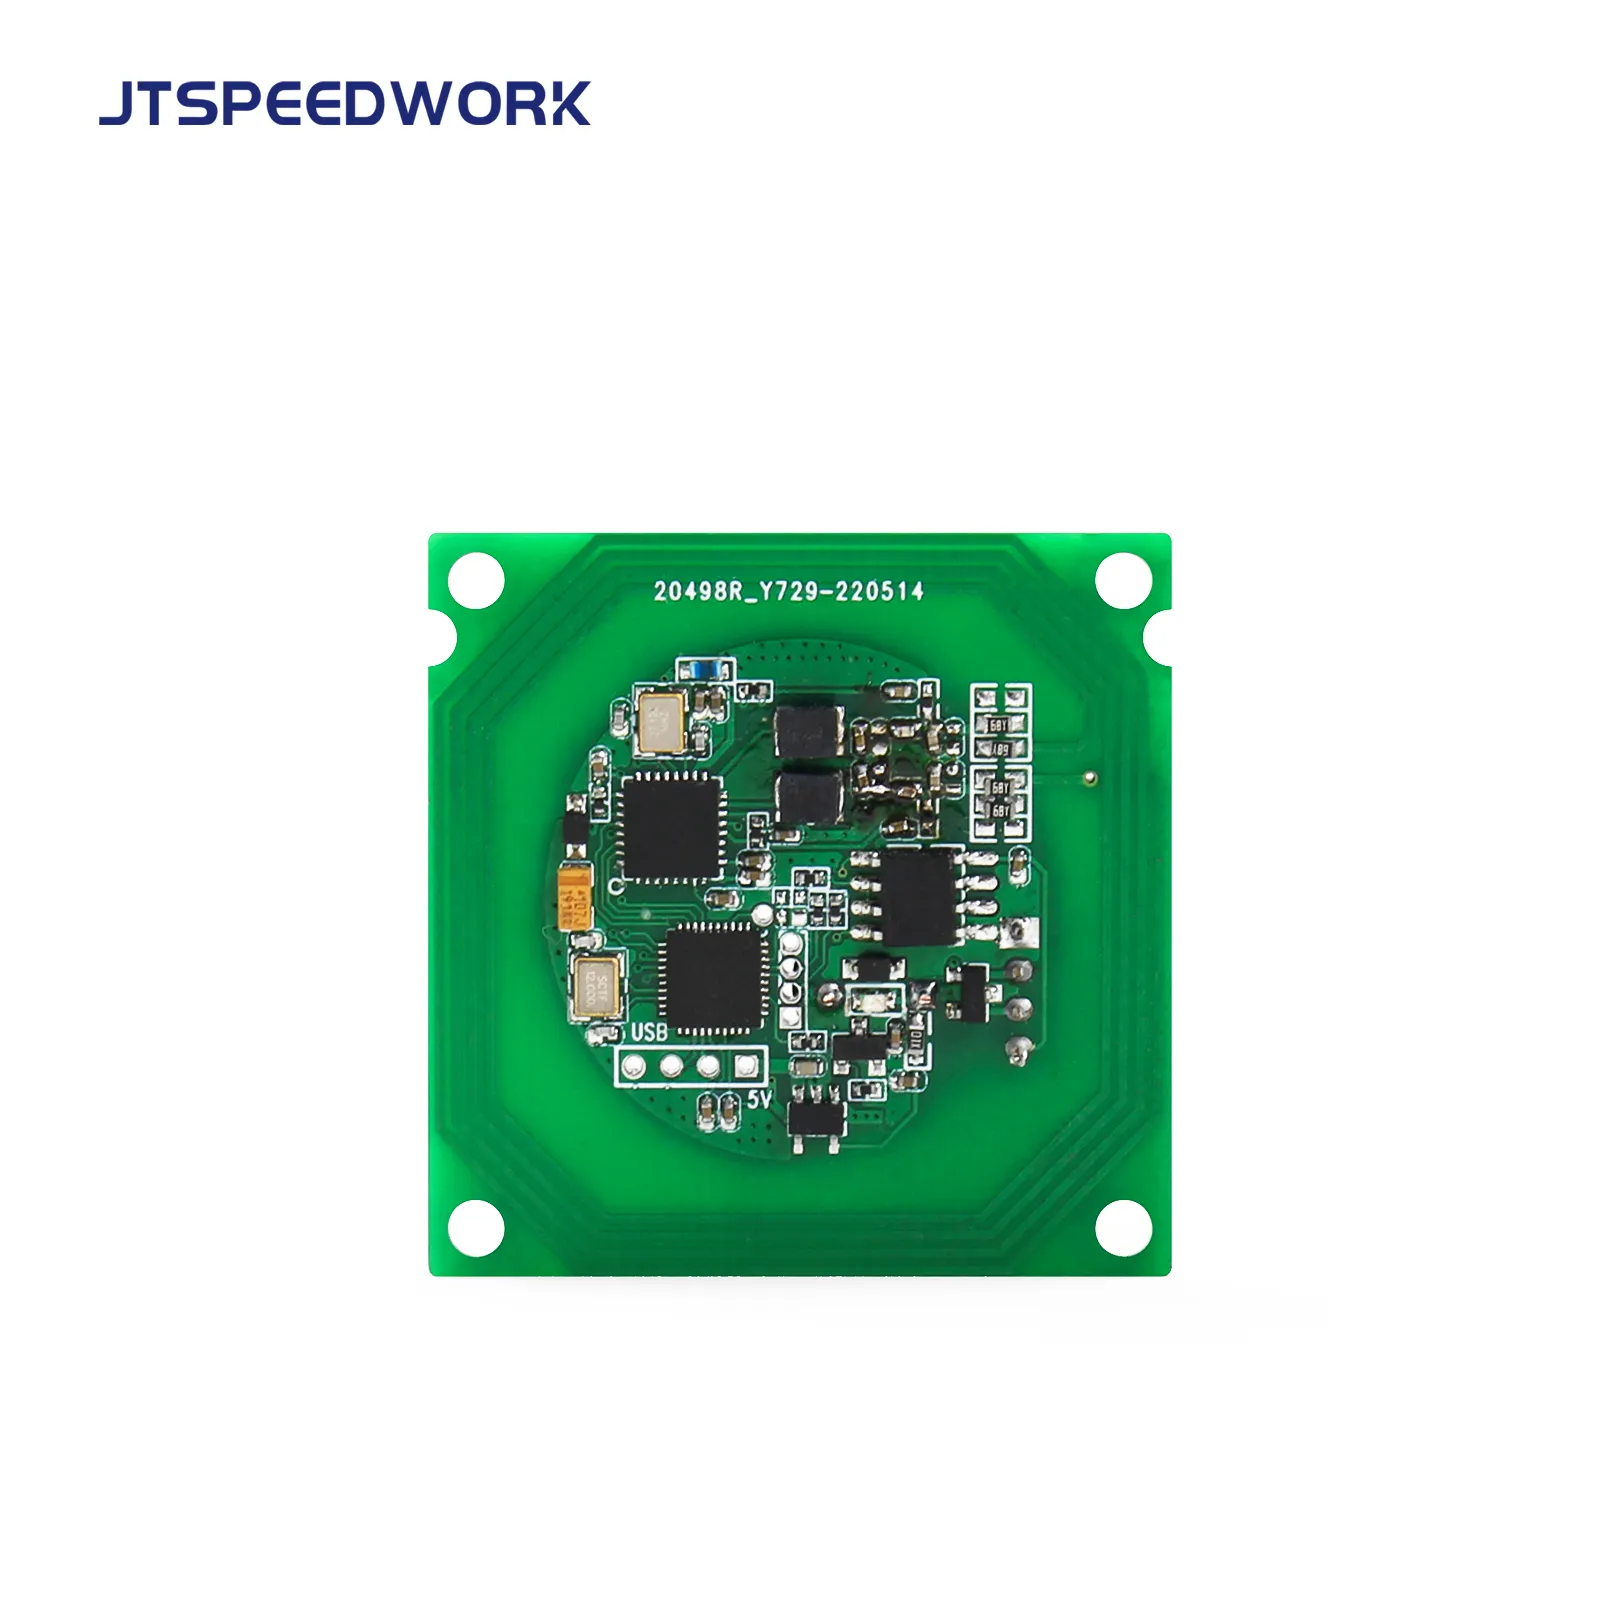 JT-1550 13,56 MHz RIFD PCBA Layout Reader Schreiben HF RFID ISO/IEC 14443A/B Modul NFC Modul NFC Reader